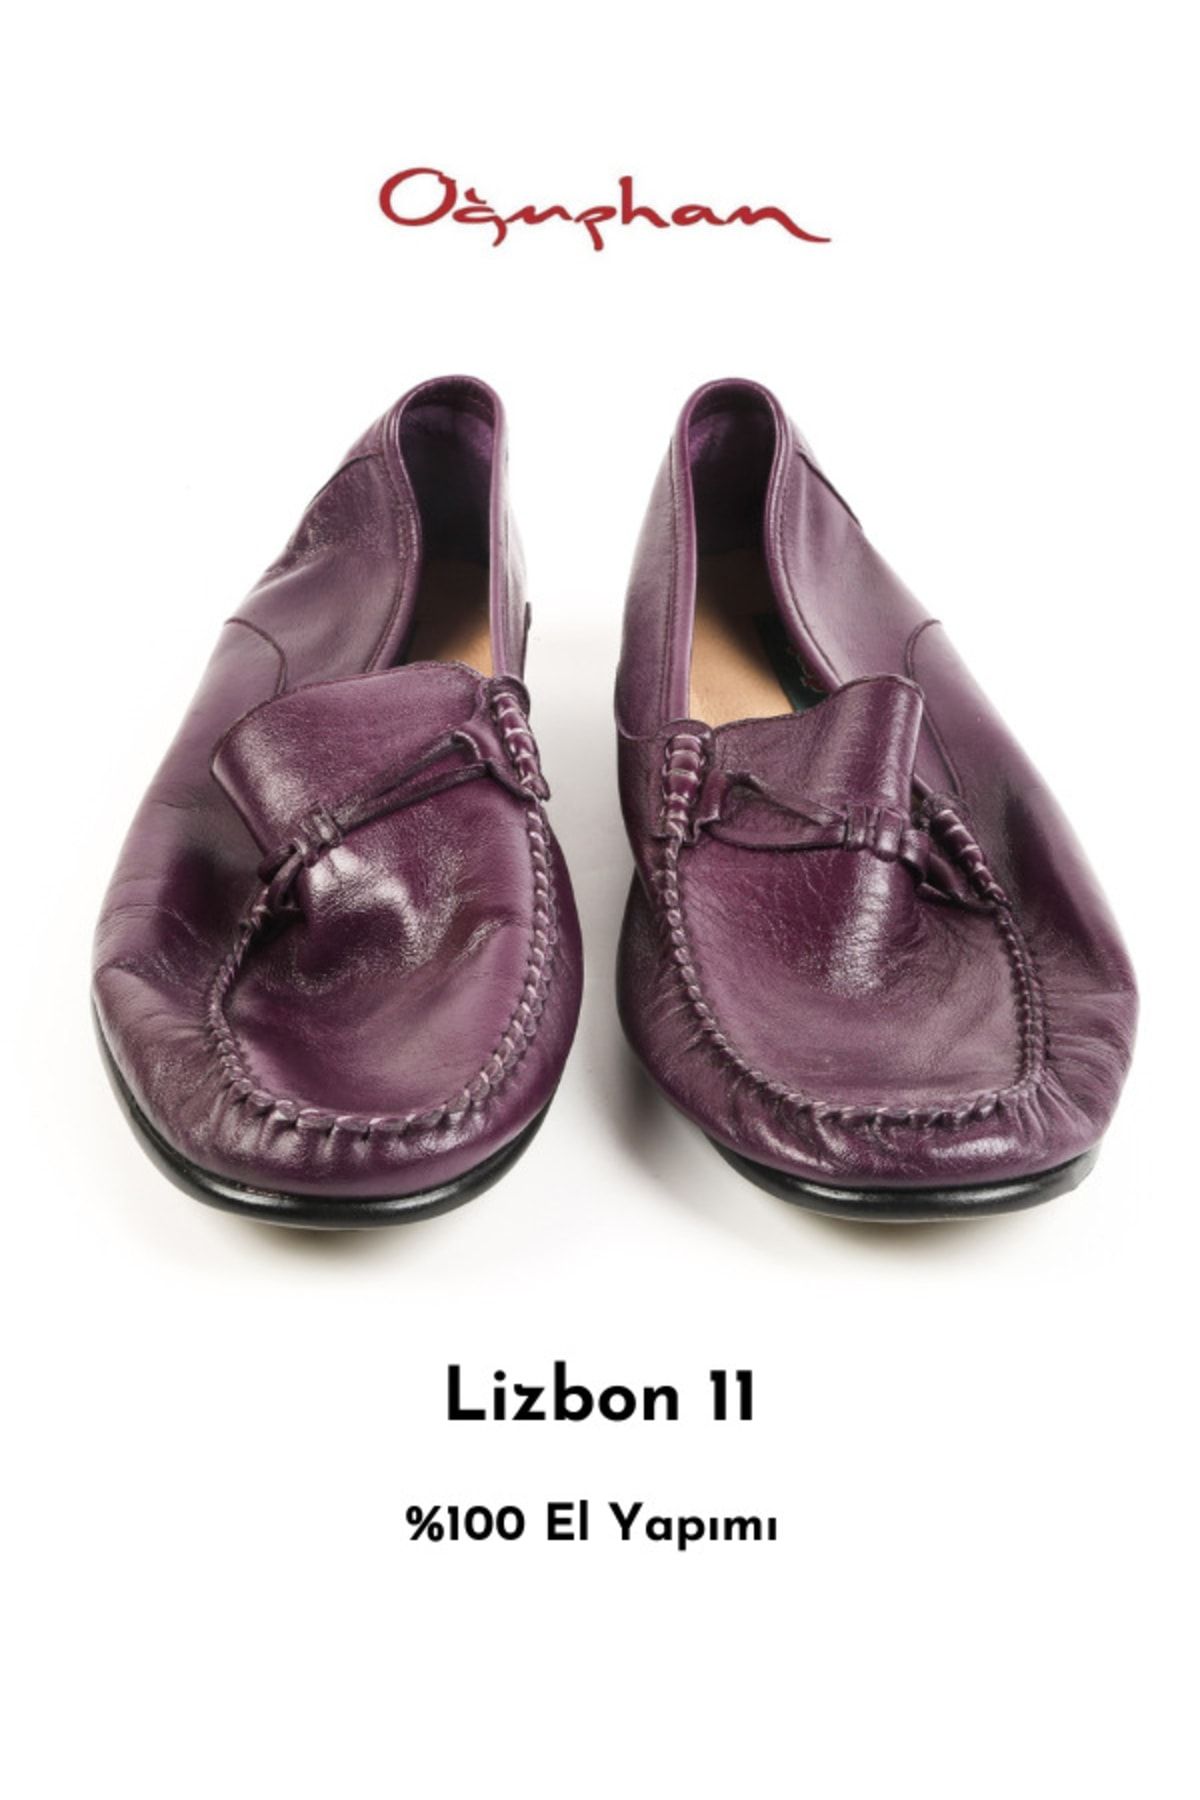 oğuzhan ayakkabı Erkek %100 Yumuşak El Yapımı %100 Kösele Yüksek Kaliteli Doğal Deri Şık Ve Rahat Lizbon 11